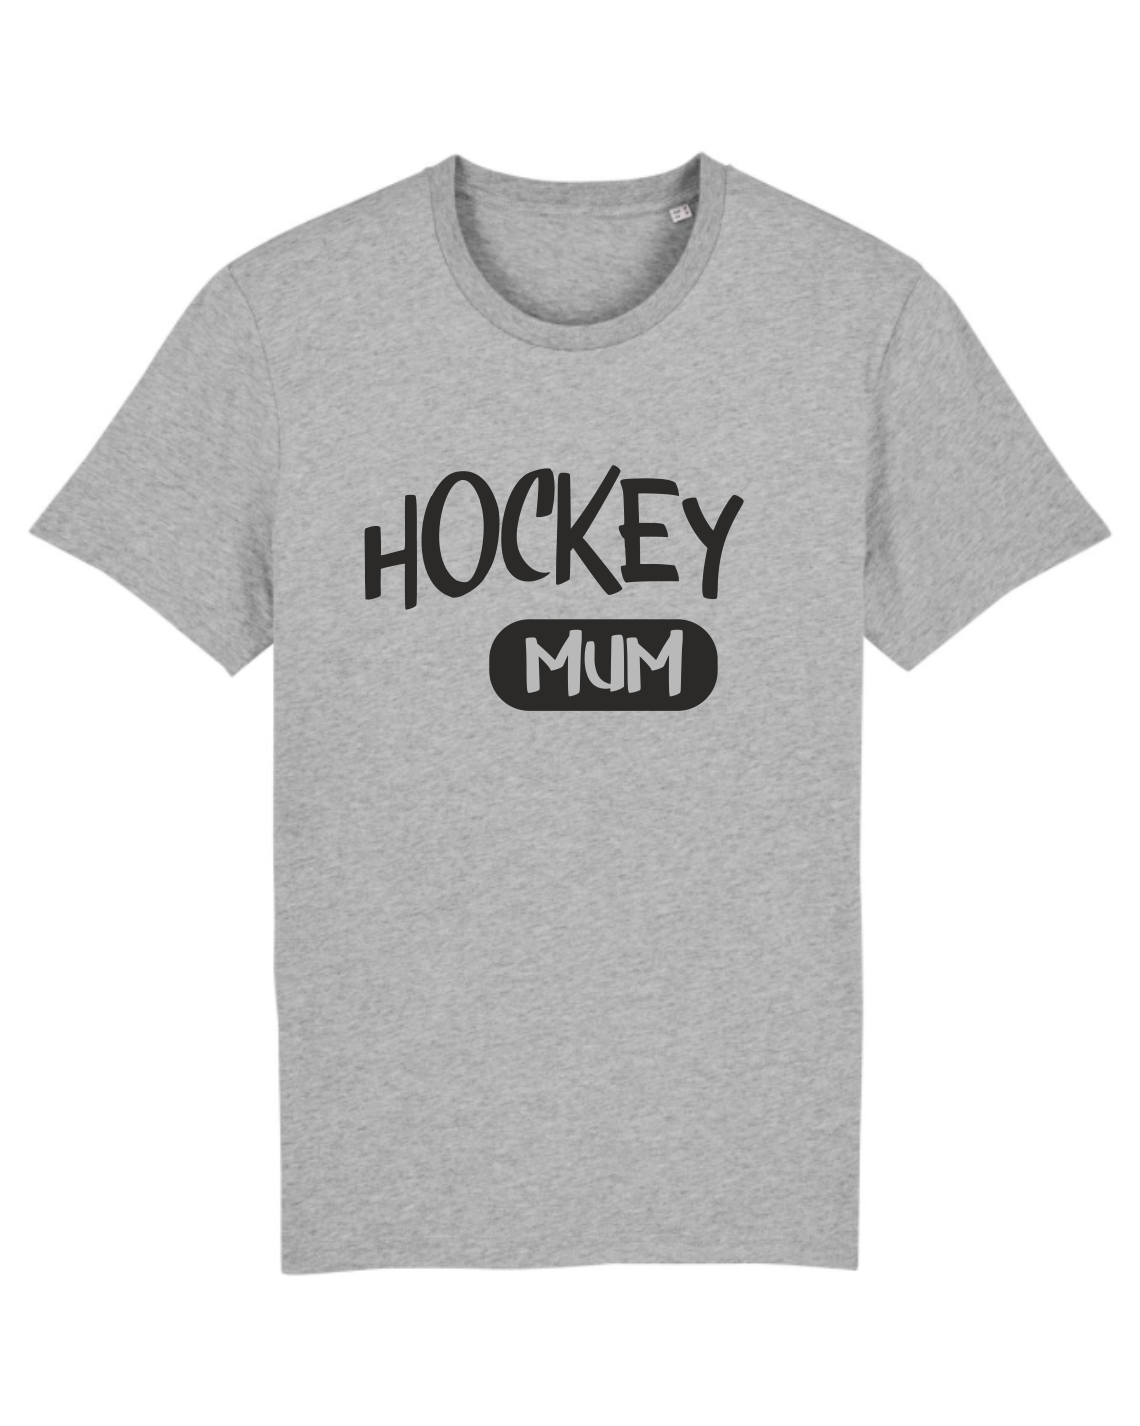 Hockey Mum Shirt  Unisex 1